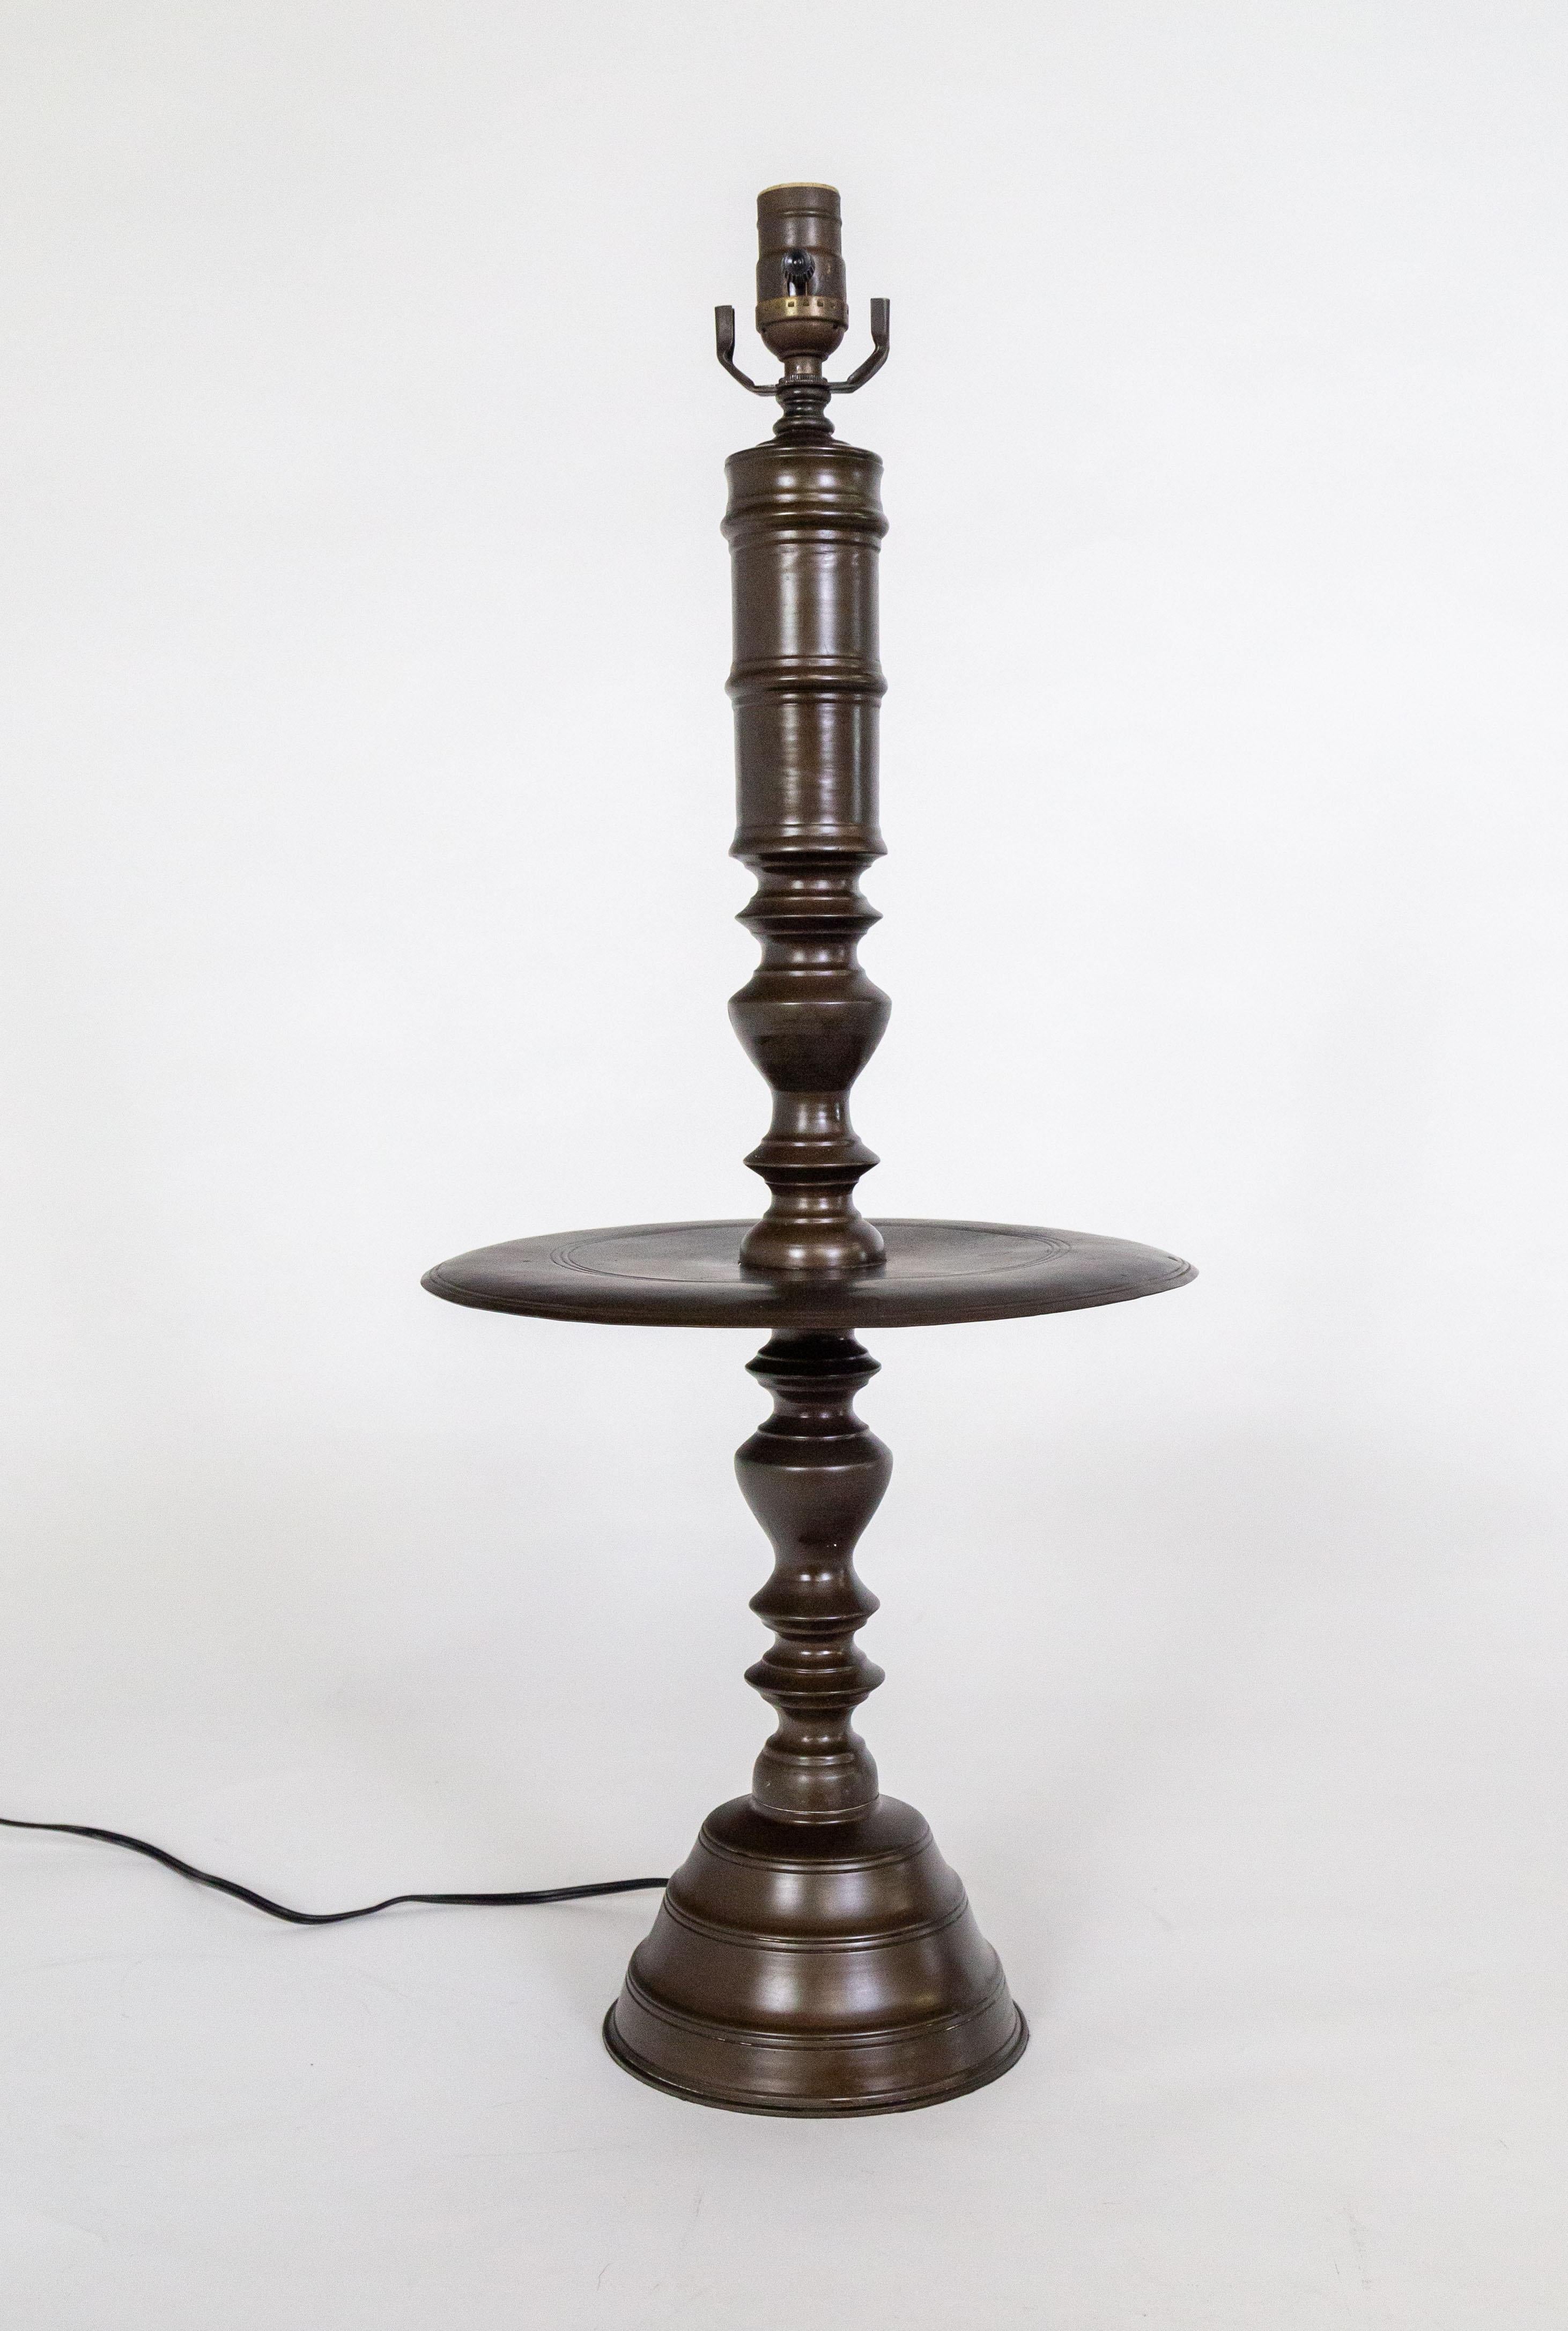 Eine Lampe aus der holländischen Kolonialzeit mit einer Schale in der Mitte des gedrechselten, gegossenen Bronzekörpers. Er hat eine reiche, dunkle Patina aus geölter Bronze und ausgewogene Proportionen. Der mittlere Bereich kann kahl bleiben, ist